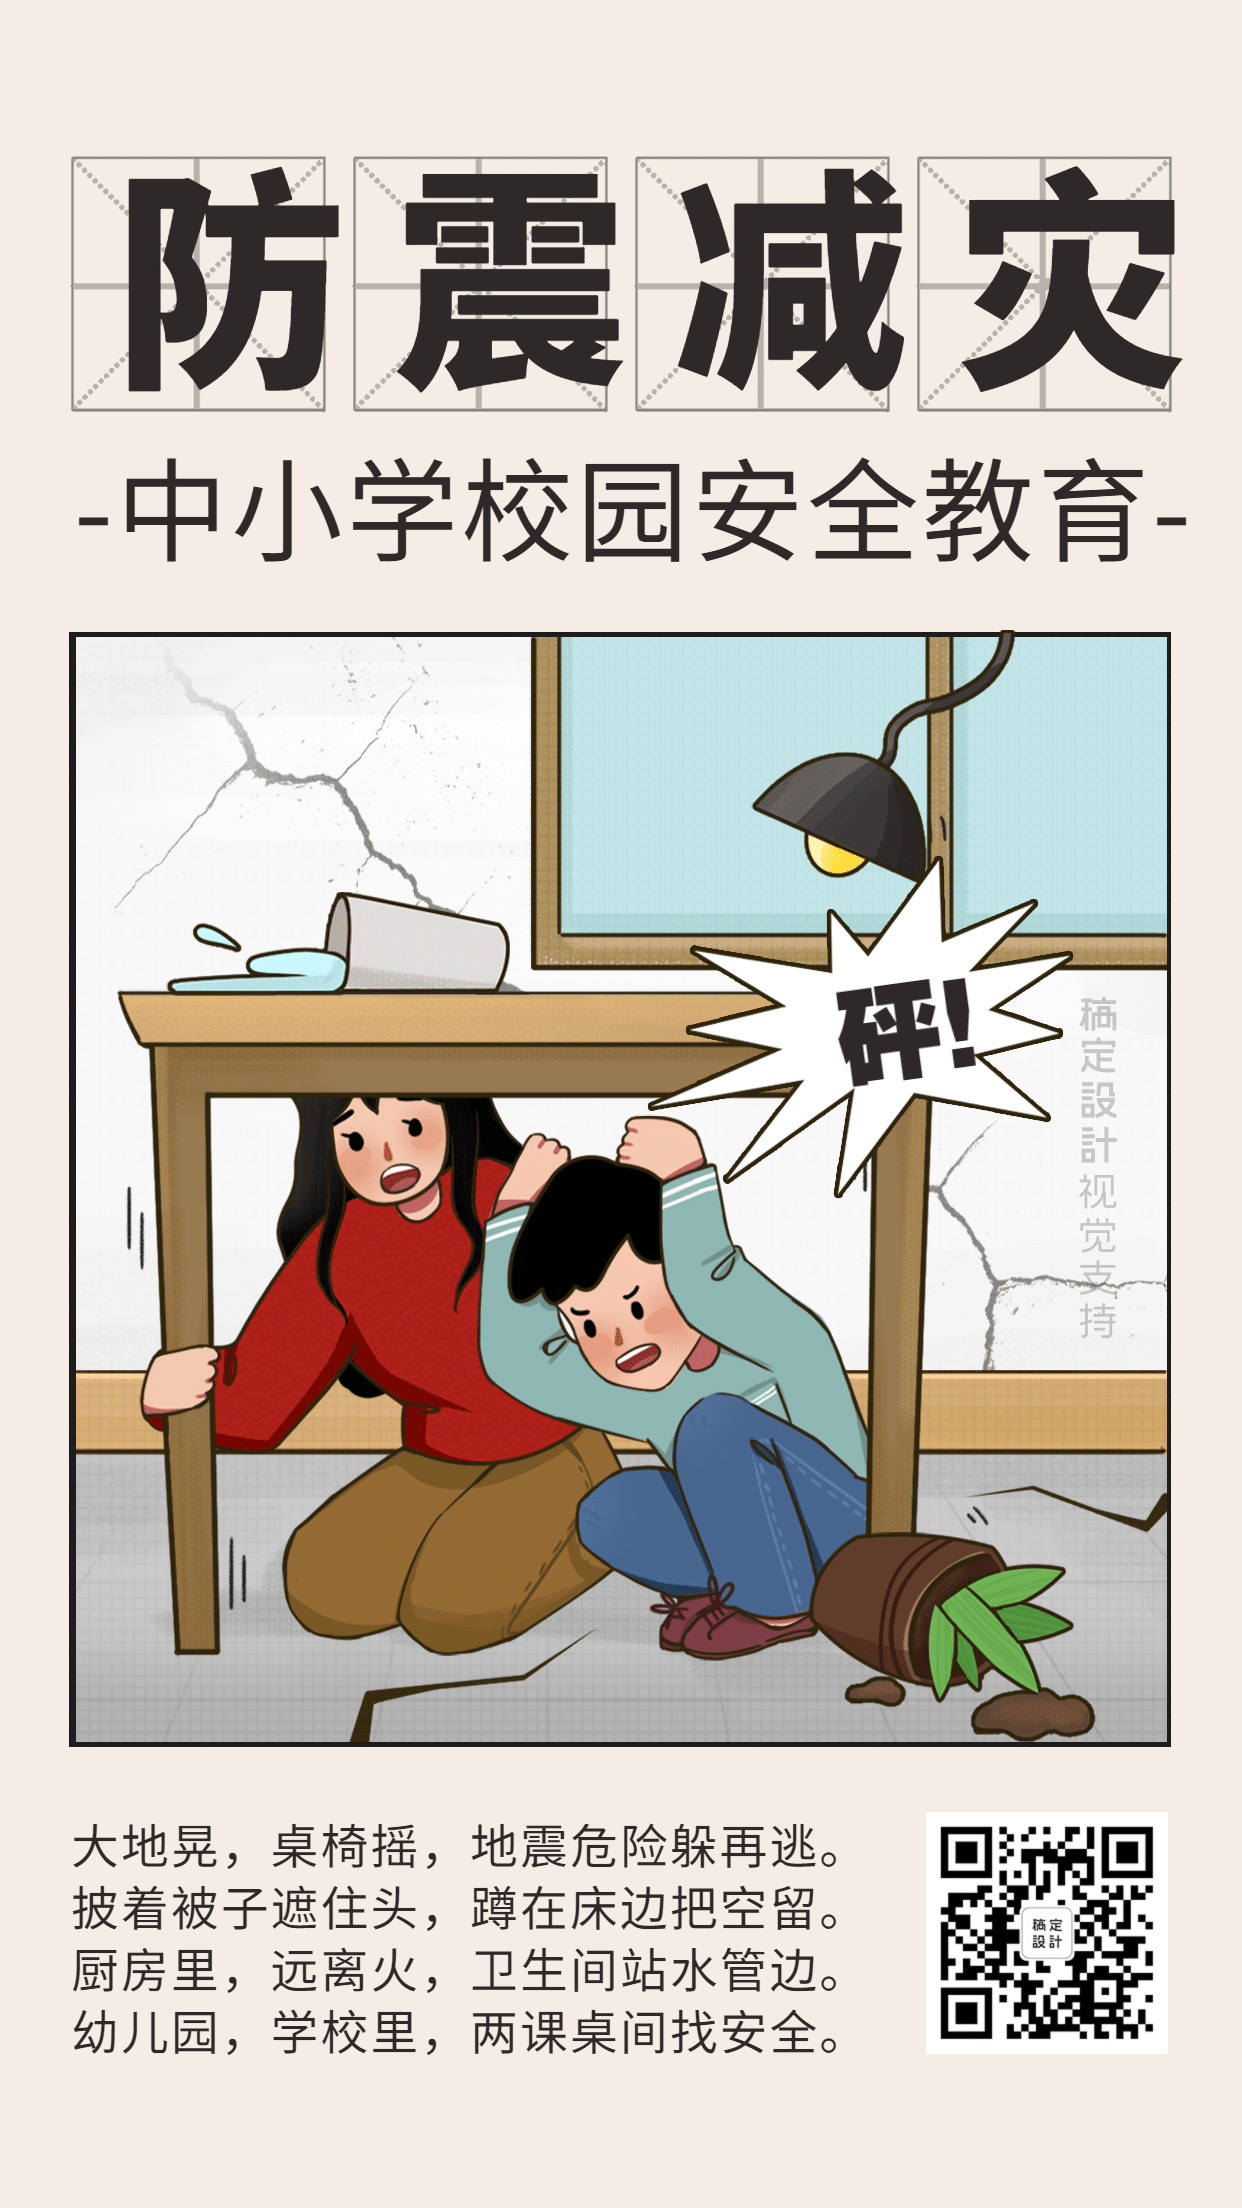 防震减灾地震校园宣传海报预览效果